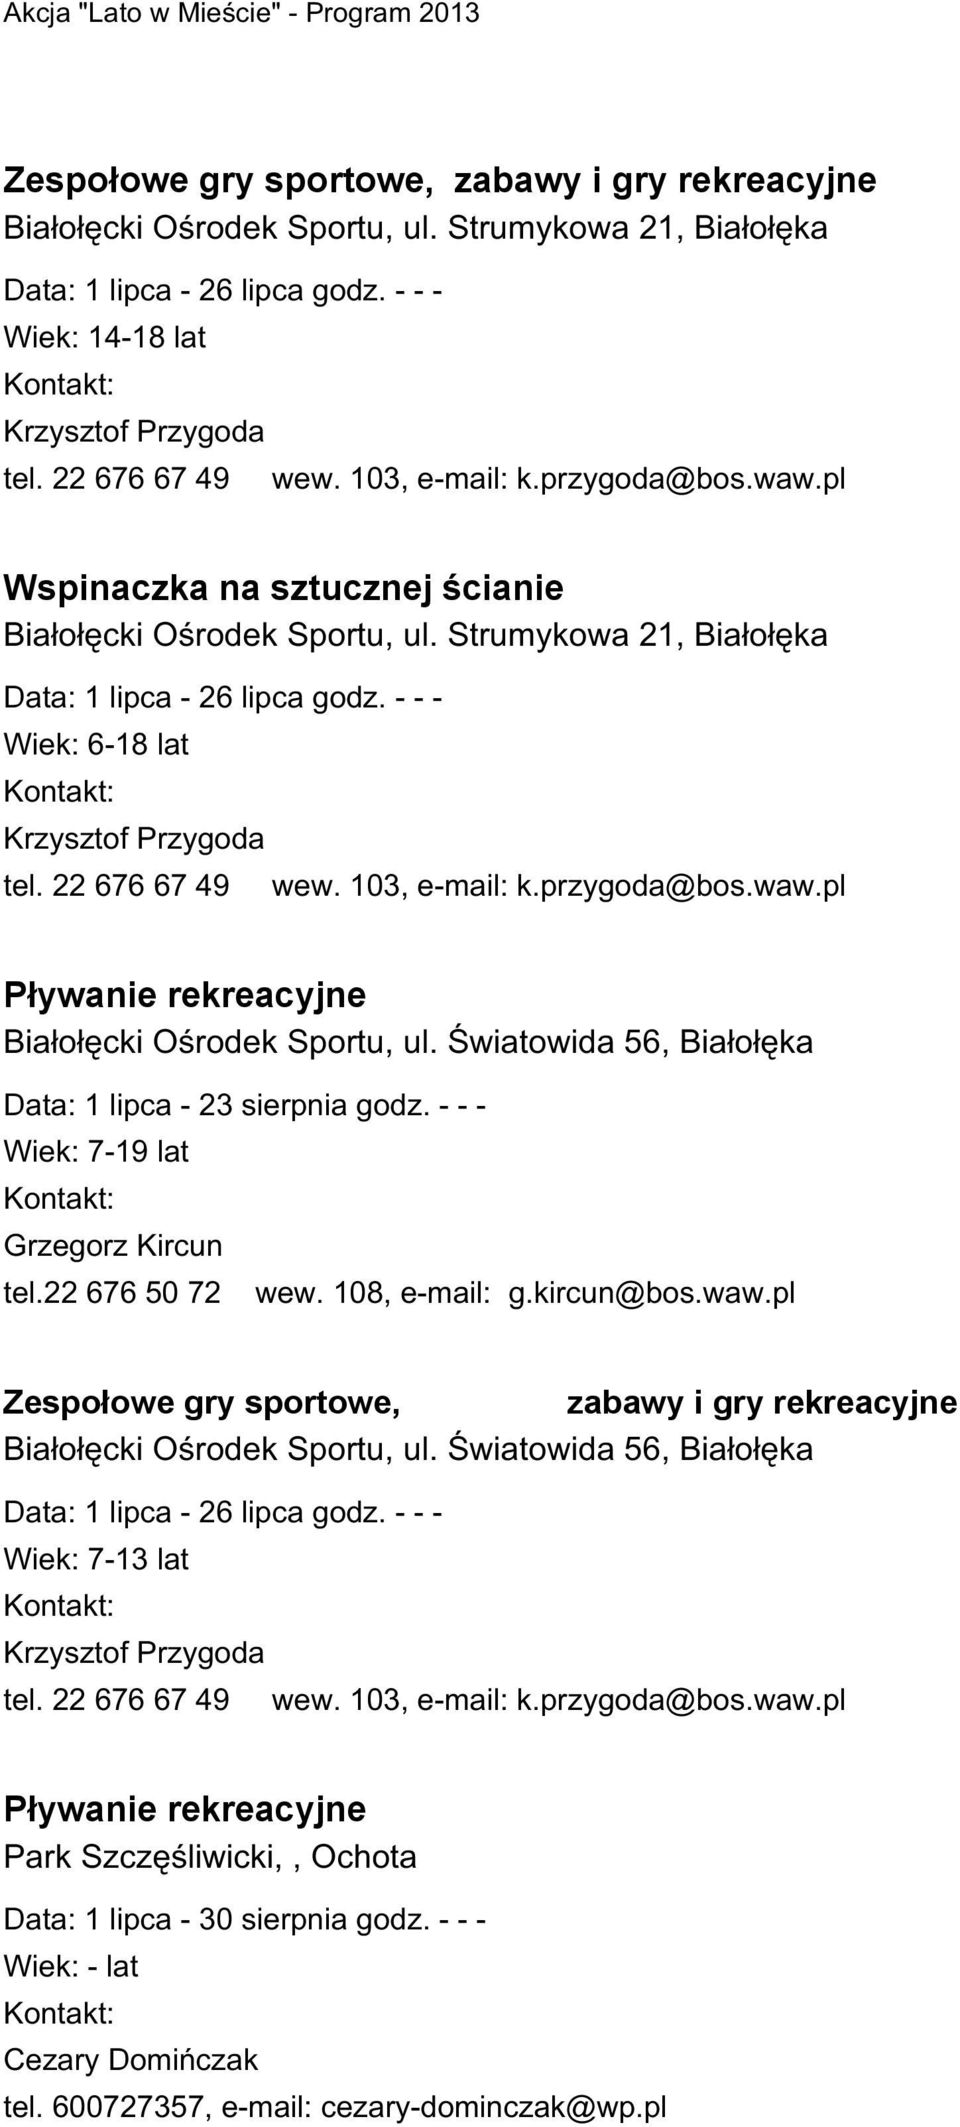 22 676 67 49 wew. 103, e-mail: k.przygoda@bos.waw.pl Pływanie rekreacyjne Białołęcki Ośrodek Sportu, ul. Światowida 56, Białołęka Data: 1 lipca - 23 sierpnia godz.